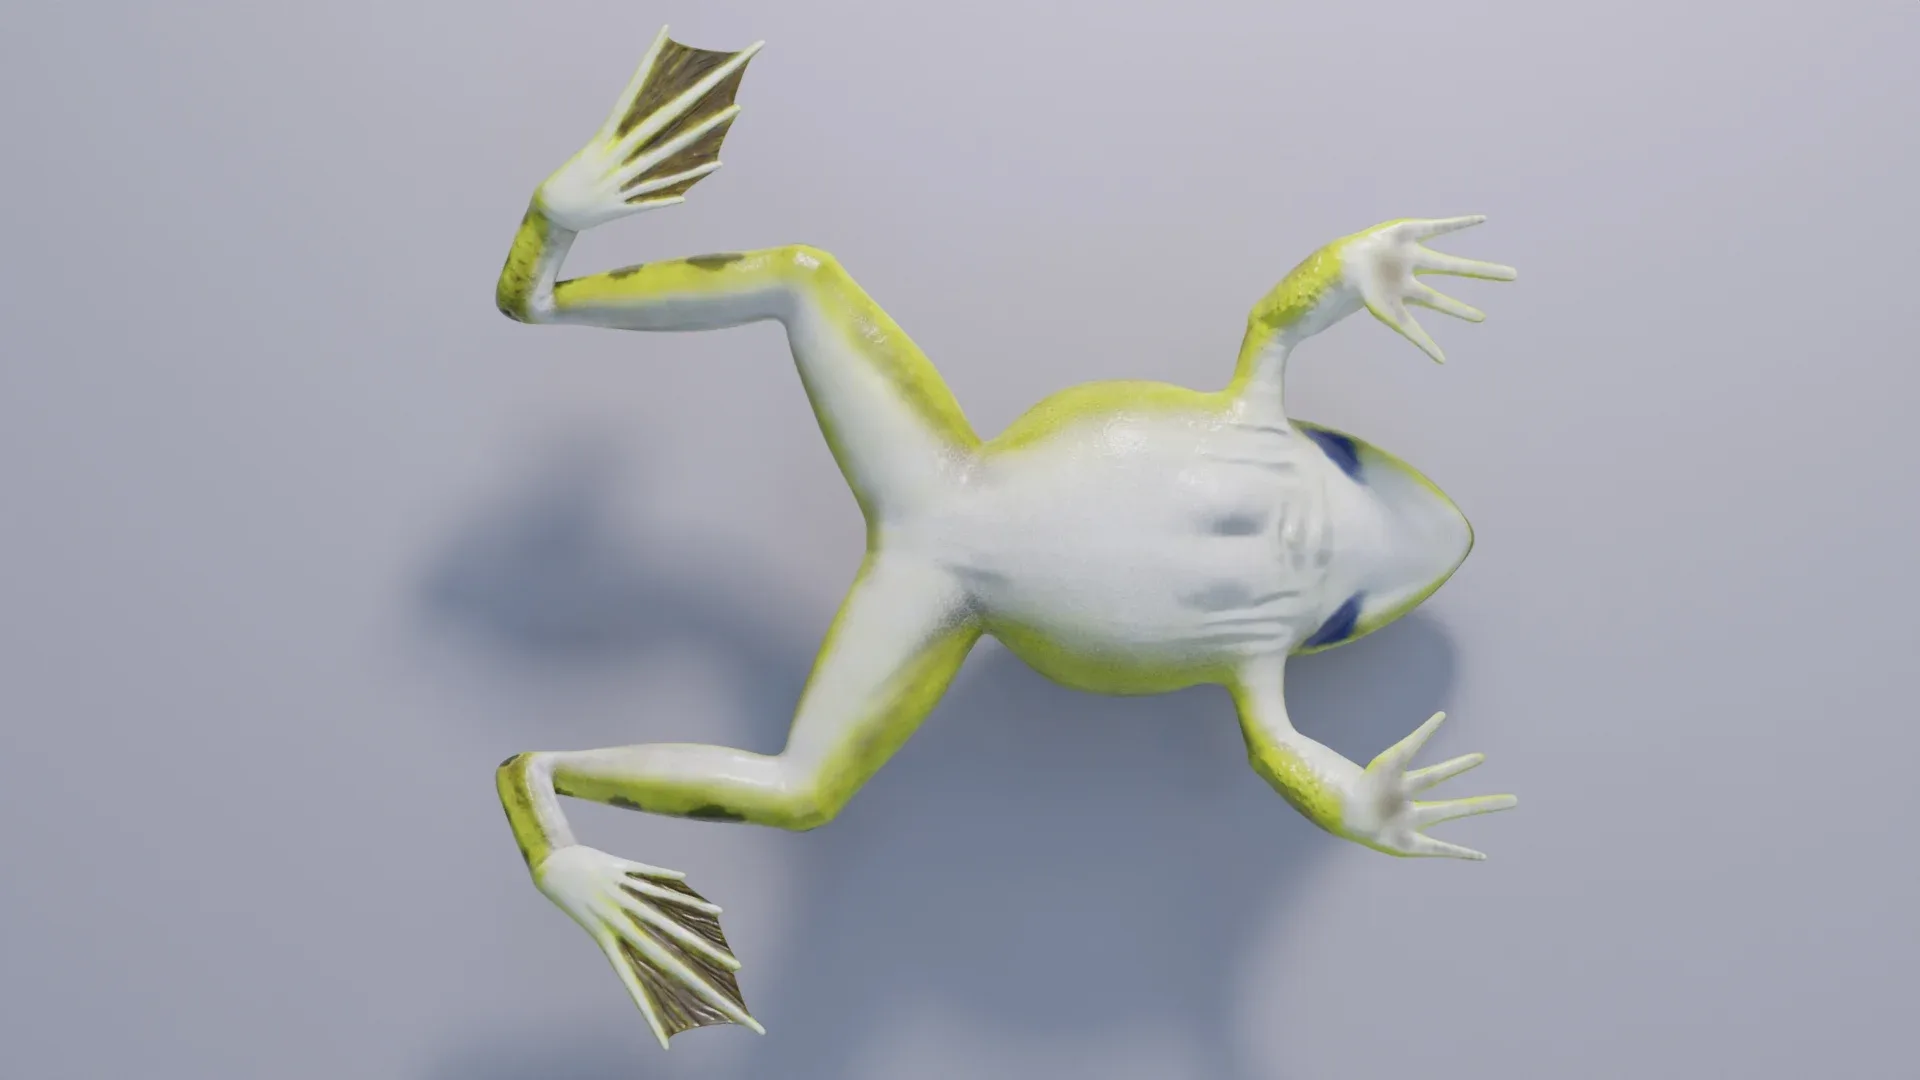 Indian Bullfrog - Animated